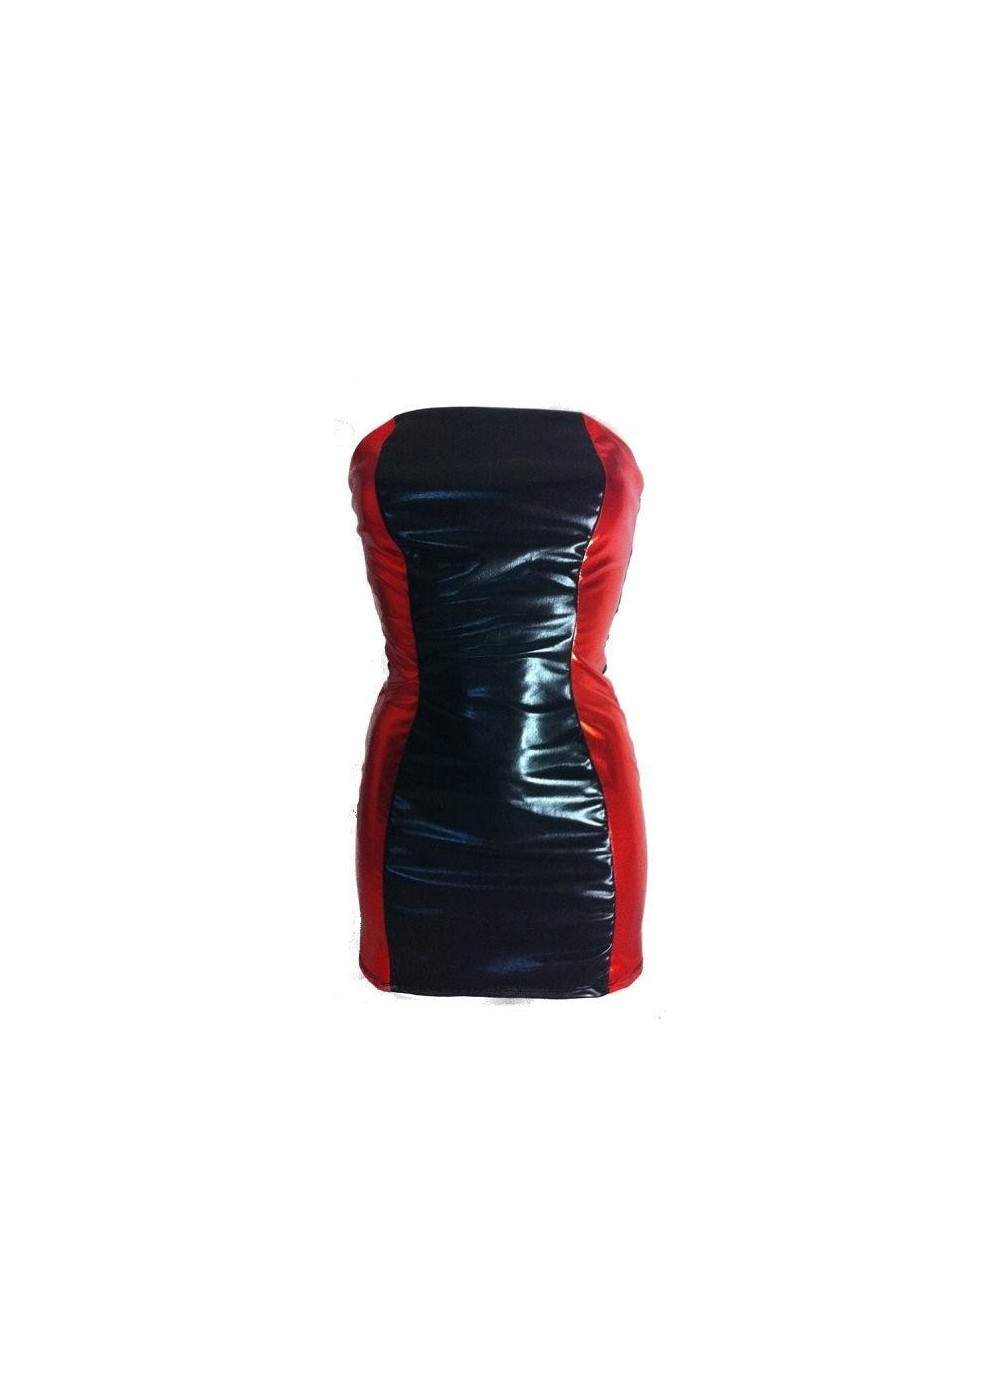 Leder-Optik BANDEAU-Kleid schwarz rot - 